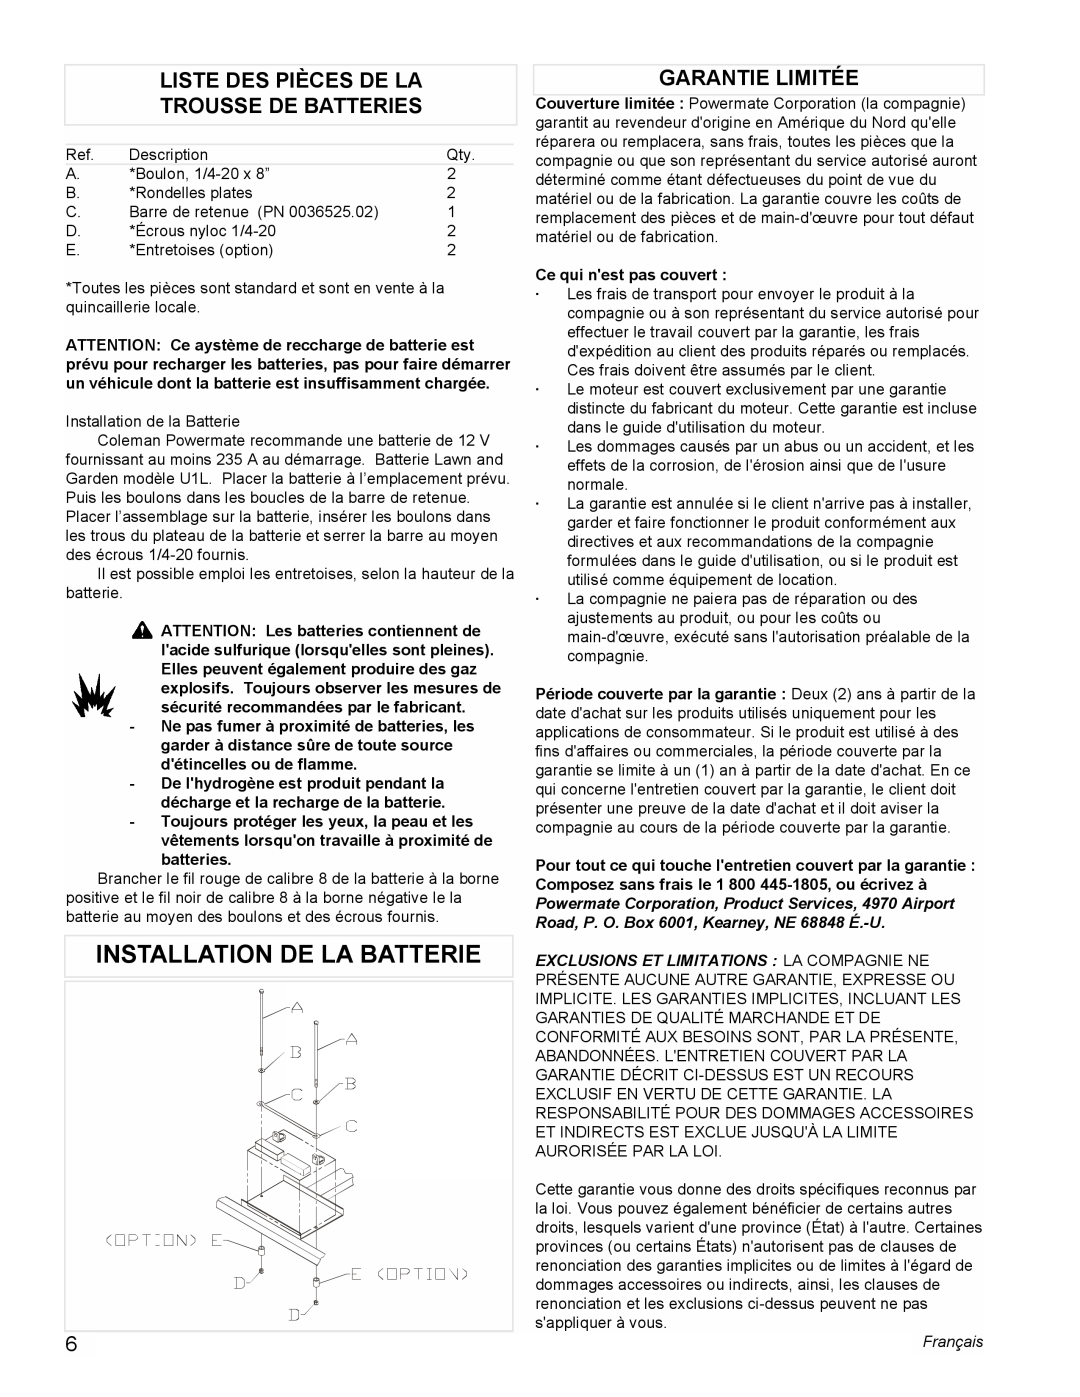 Powermate PMC505622 Installation De La Batterie, Liste Des Pièces De La Trousse De Batteries, Garantie Limitée, Français 